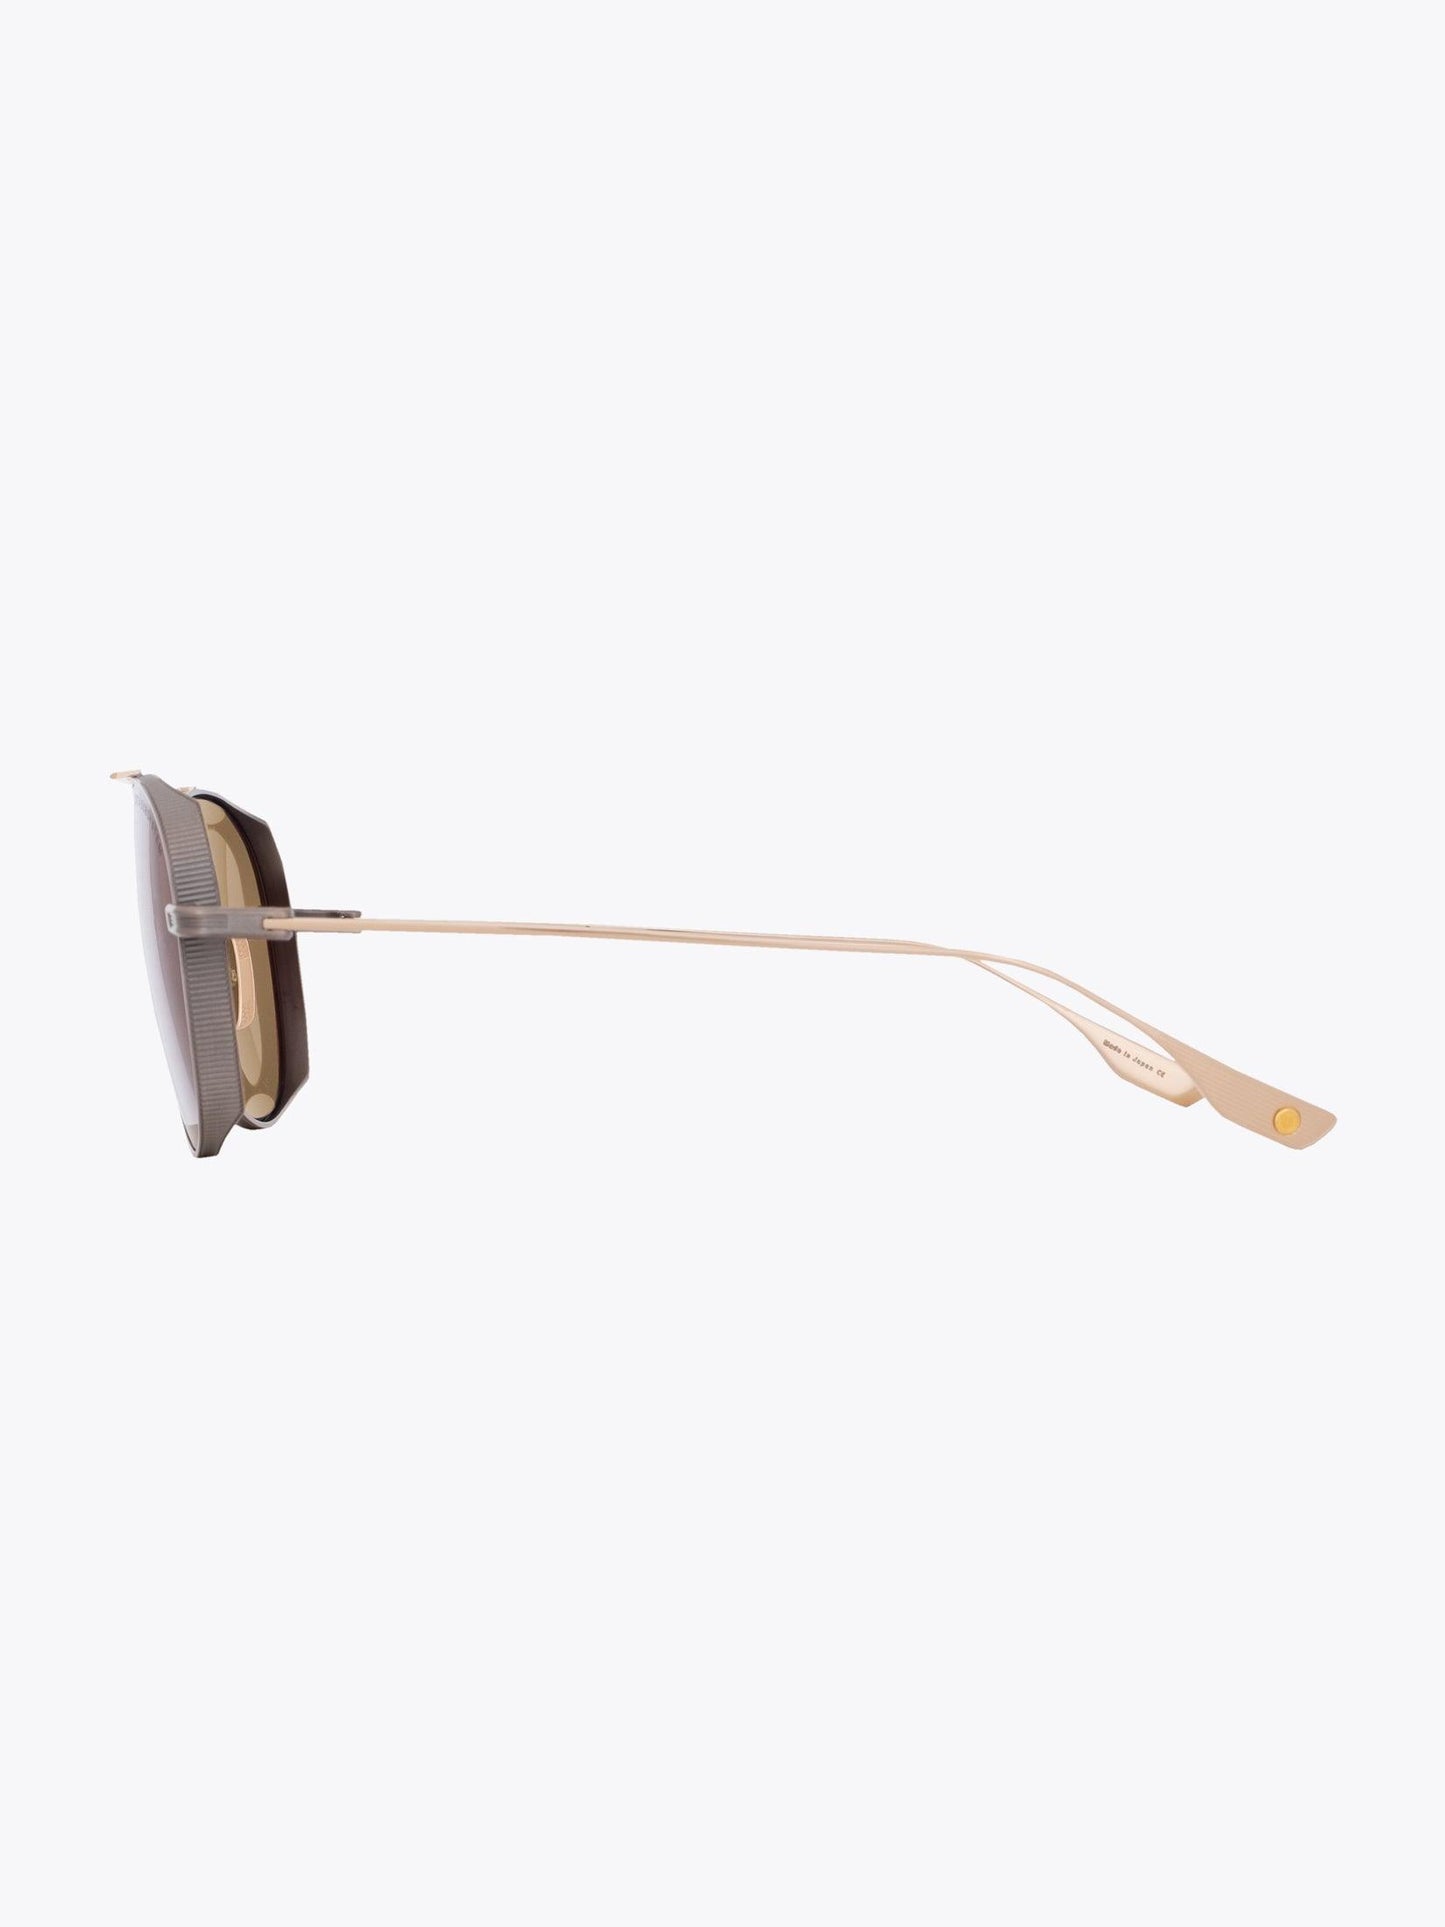 DITA Subsystem Silver Sunglasses - APODEP.com